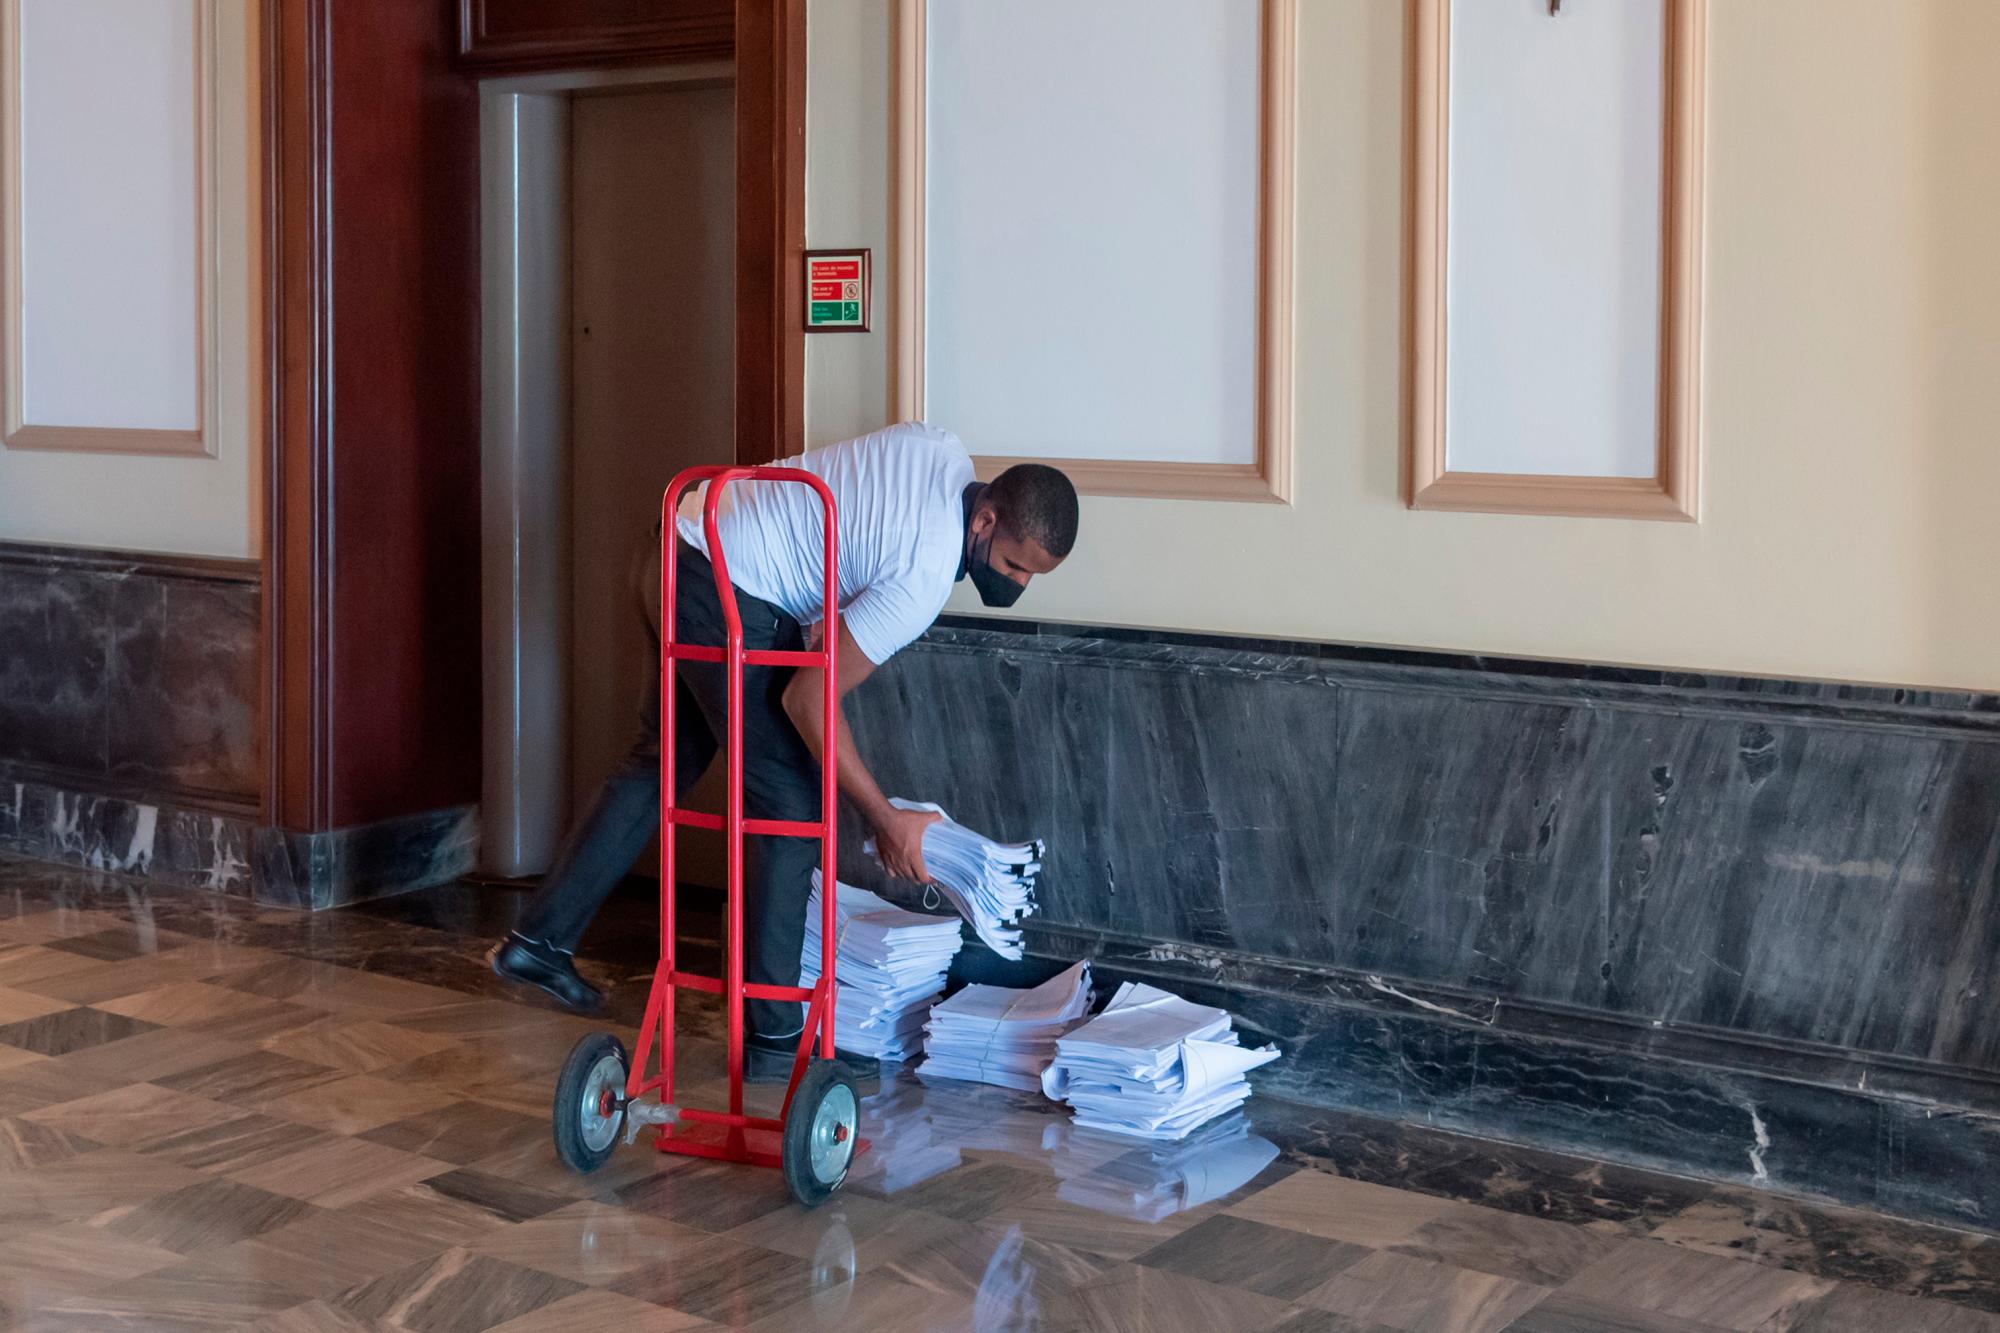 Un empleado del Palacio Nacional organiza montañas de documentos al pies de un ascensor de la casa del gobierno dominicano, este martes 28 de julio de 2020. Foto: Eddy Vittini/Diario Libre